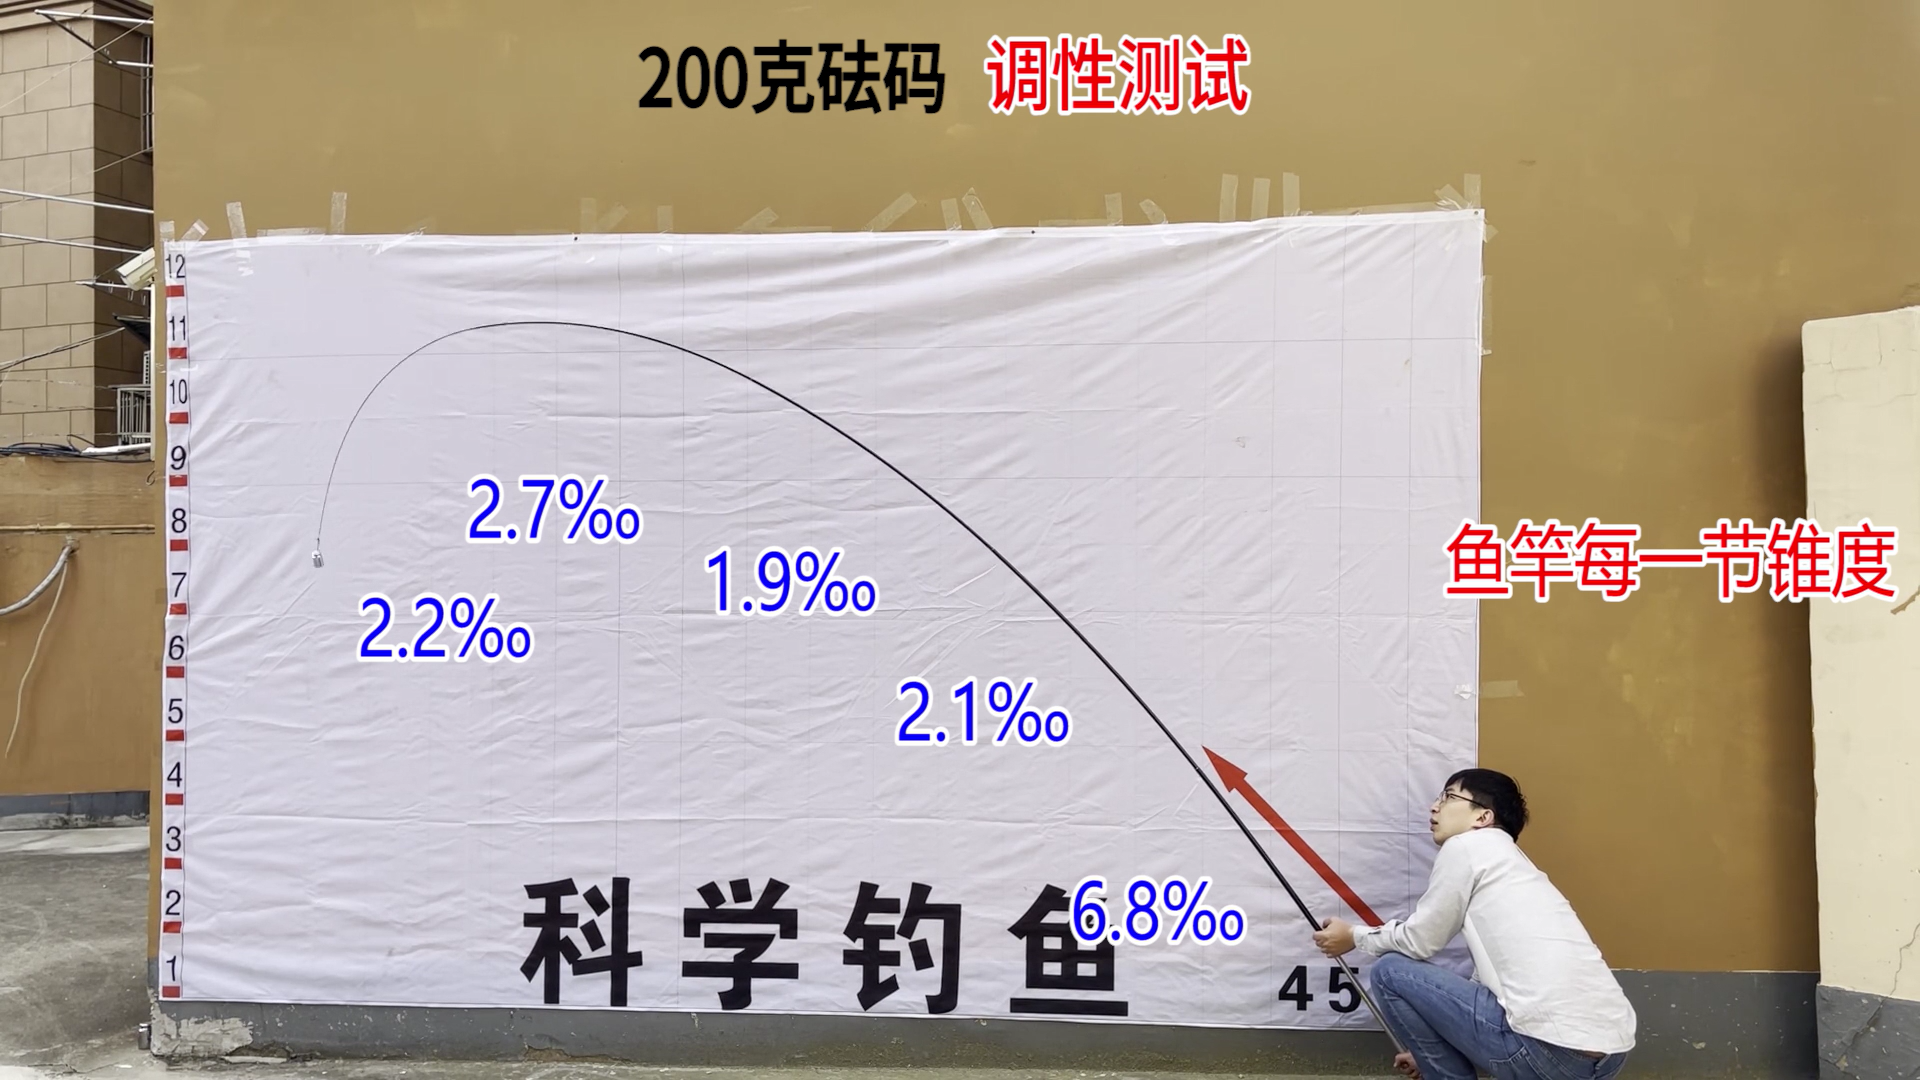 花三百元买了一根日本钓
鱼
竿
，强度不到4公斤，是不是亏了？